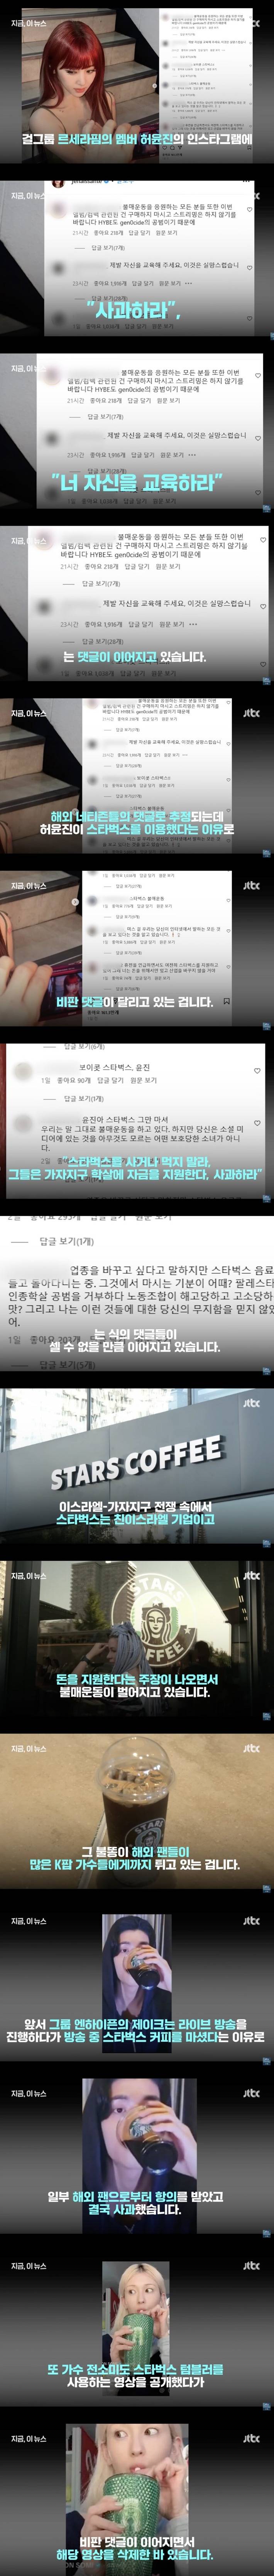 케이팝 그룹 멤버들이 외국인에게 공격받는 이유